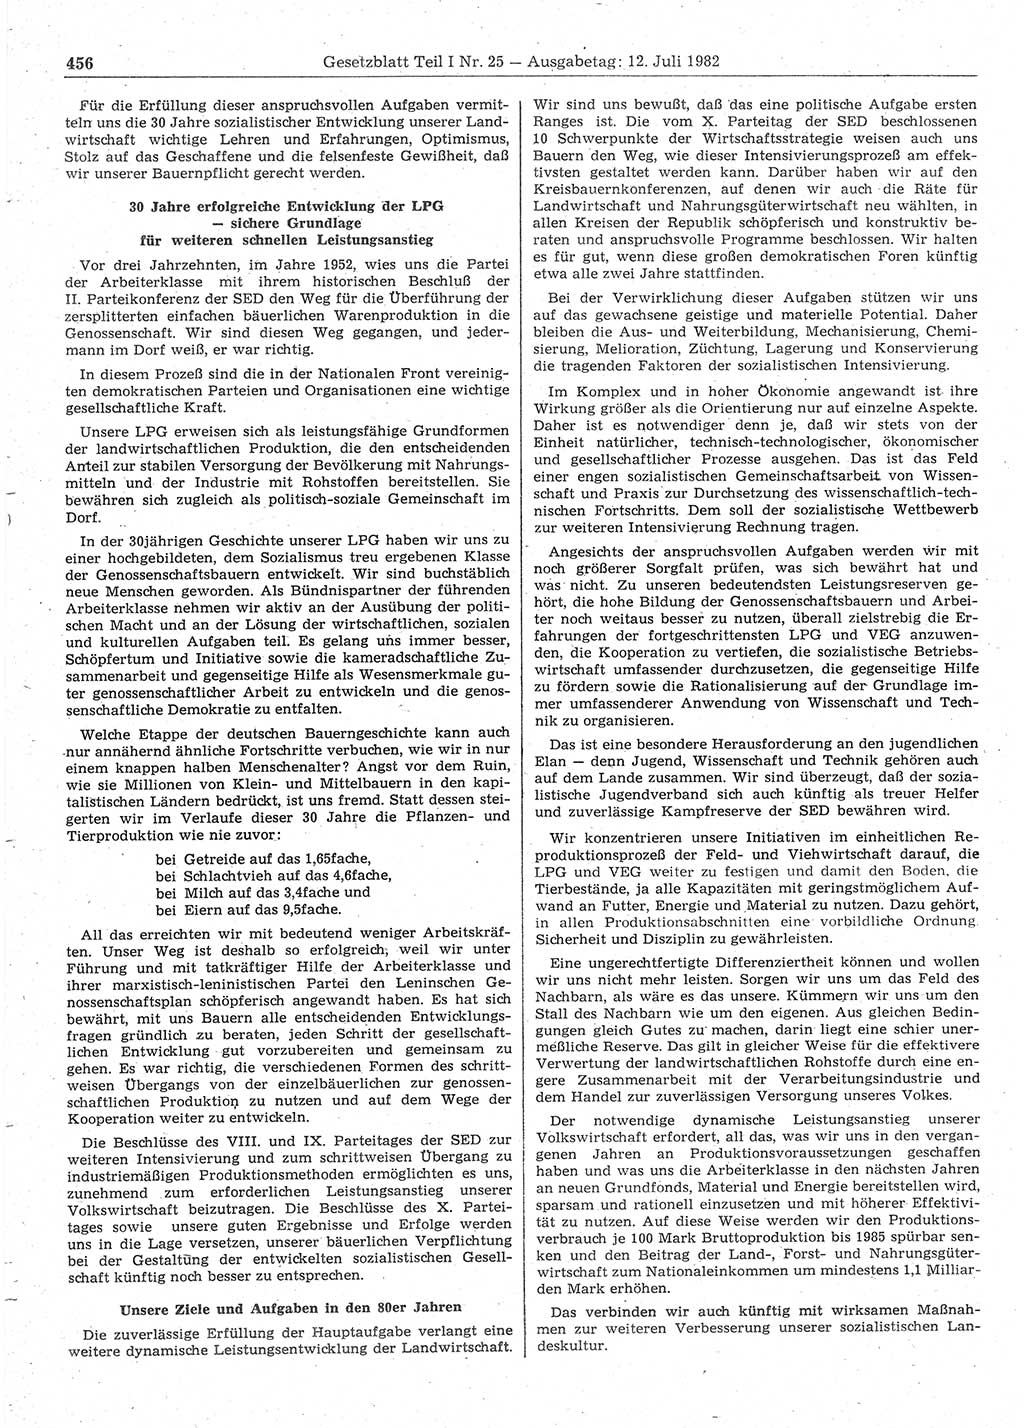 Gesetzblatt (GBl.) der Deutschen Demokratischen Republik (DDR) Teil Ⅰ 1982, Seite 456 (GBl. DDR Ⅰ 1982, S. 456)